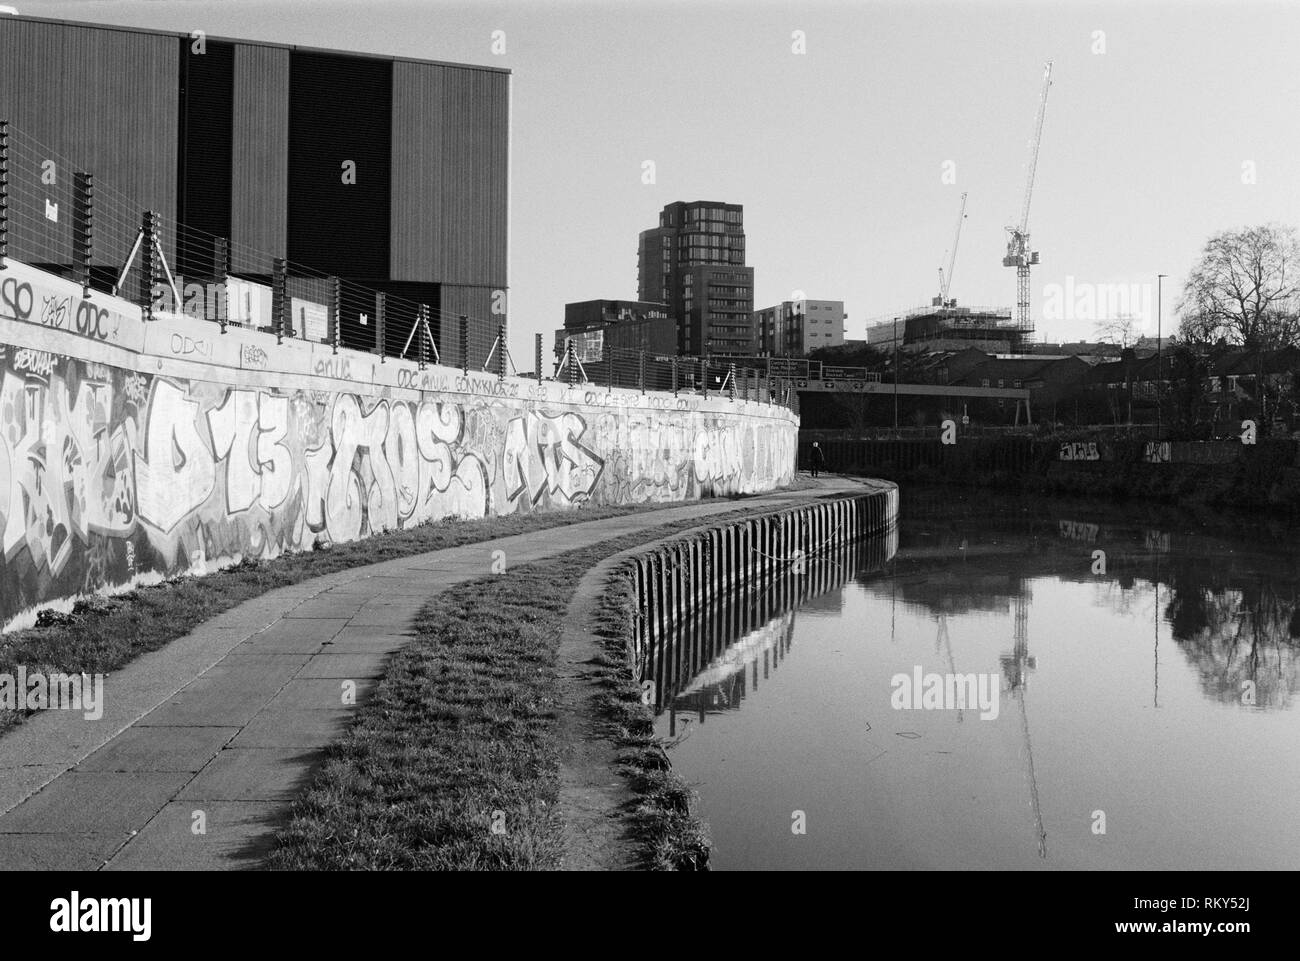 Mur de graffiti et sentier pédestre le long de la rivière Lea près de Bromley-By-Bow, East London, UK, avec des bâtiments en arrière-plan Banque D'Images